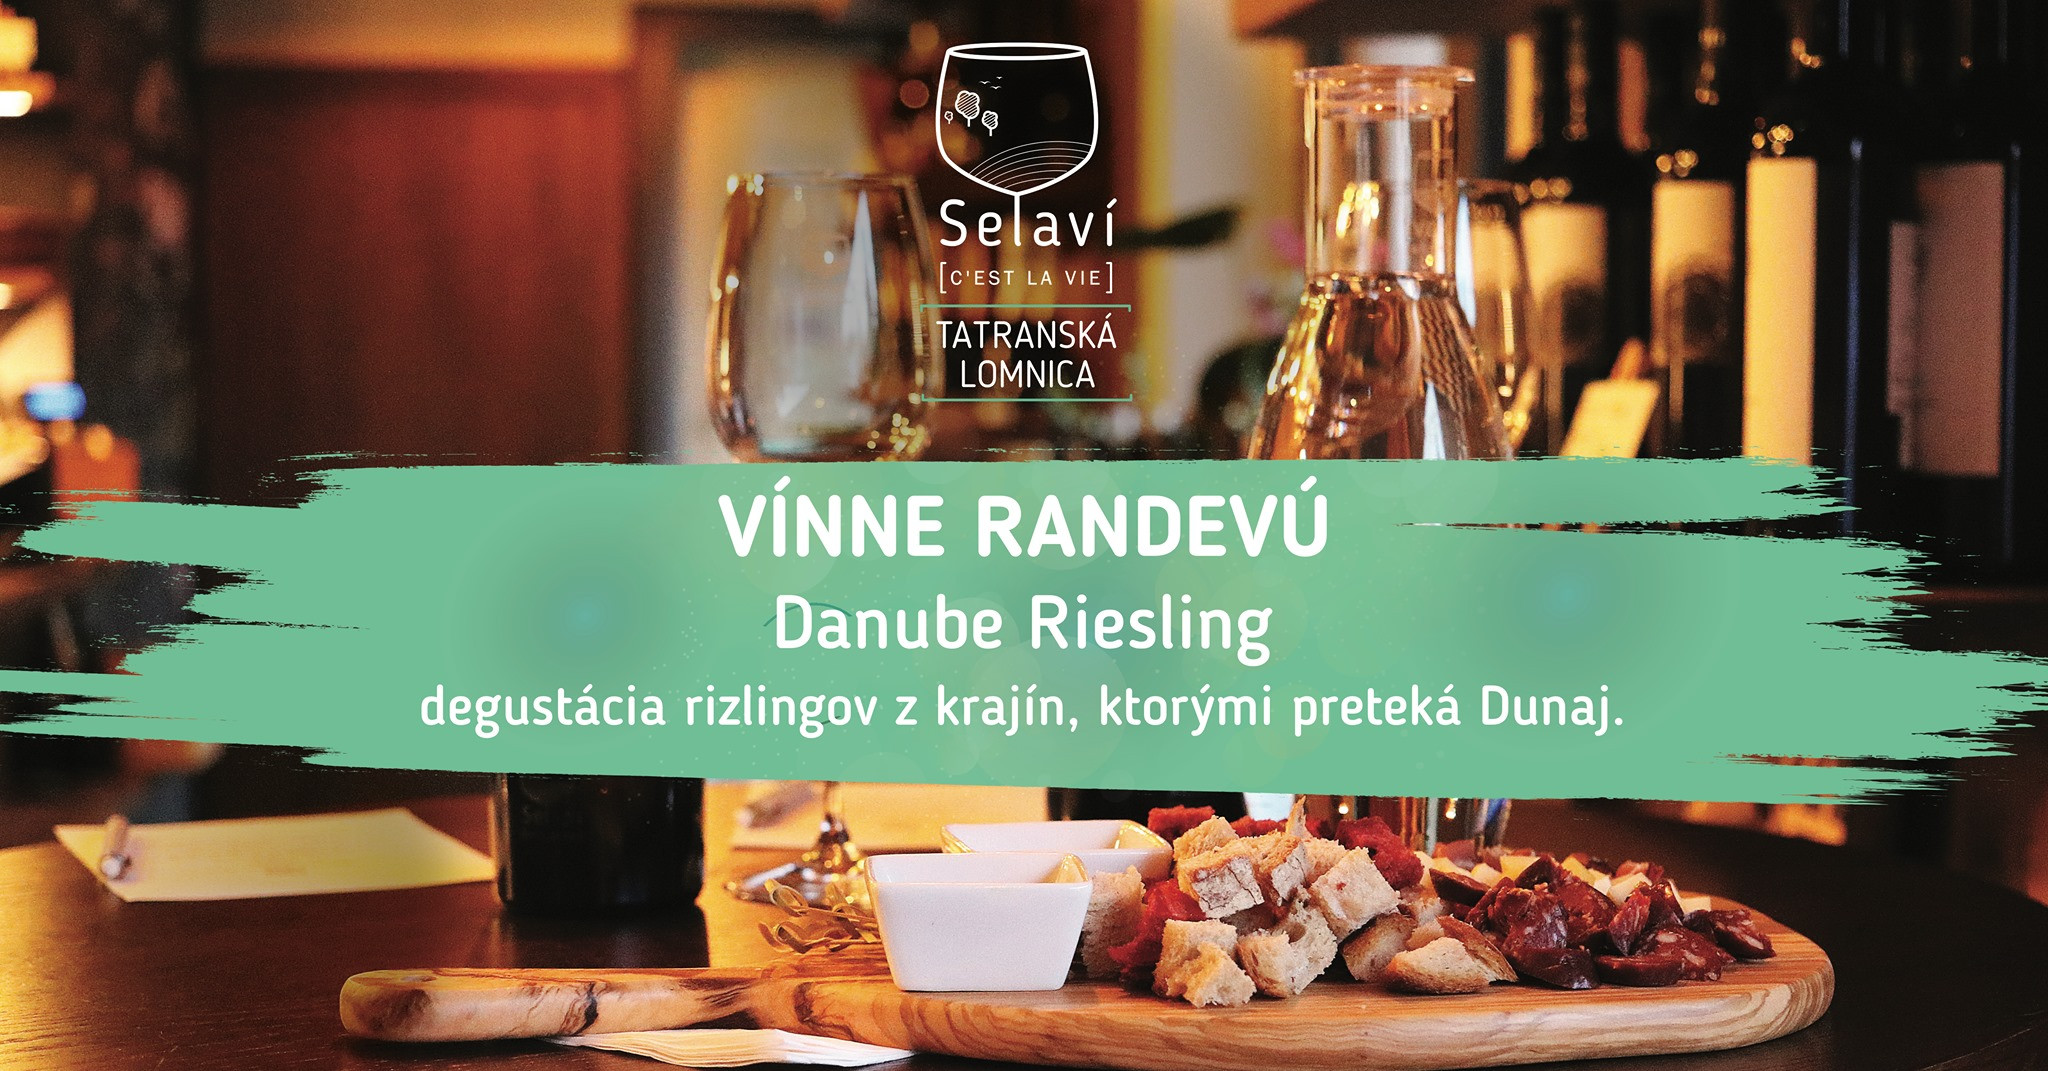 Vínne randevú: Danube Riesling (10.10.2019)